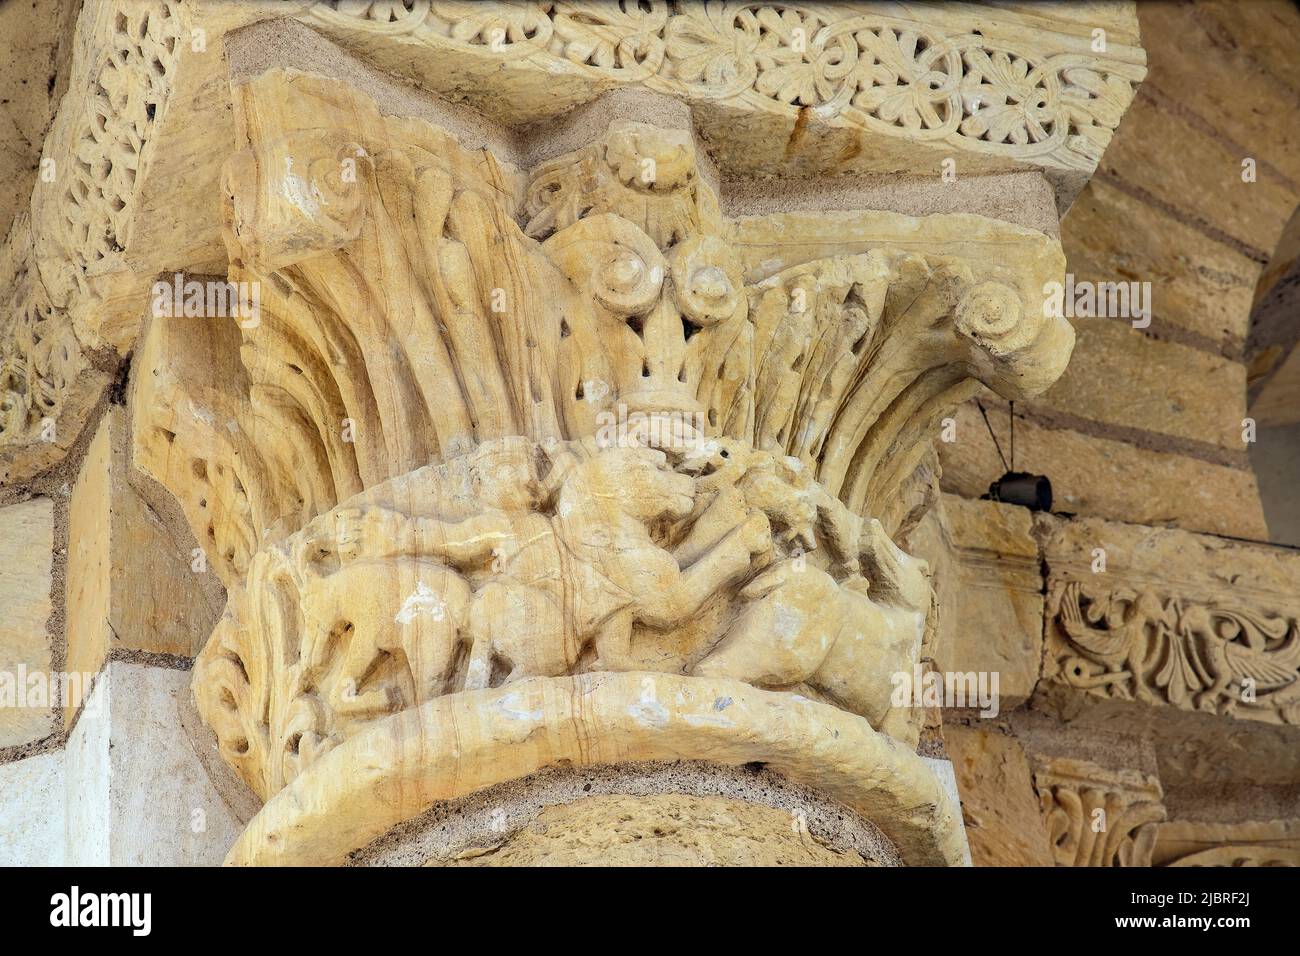 Chapiteaux sculptés dans l'abbaye romane de Saint-Benoit-sur-Loire (Abbaye de Fleury). Département de Loiret dans le centre-nord de la France. Banque D'Images